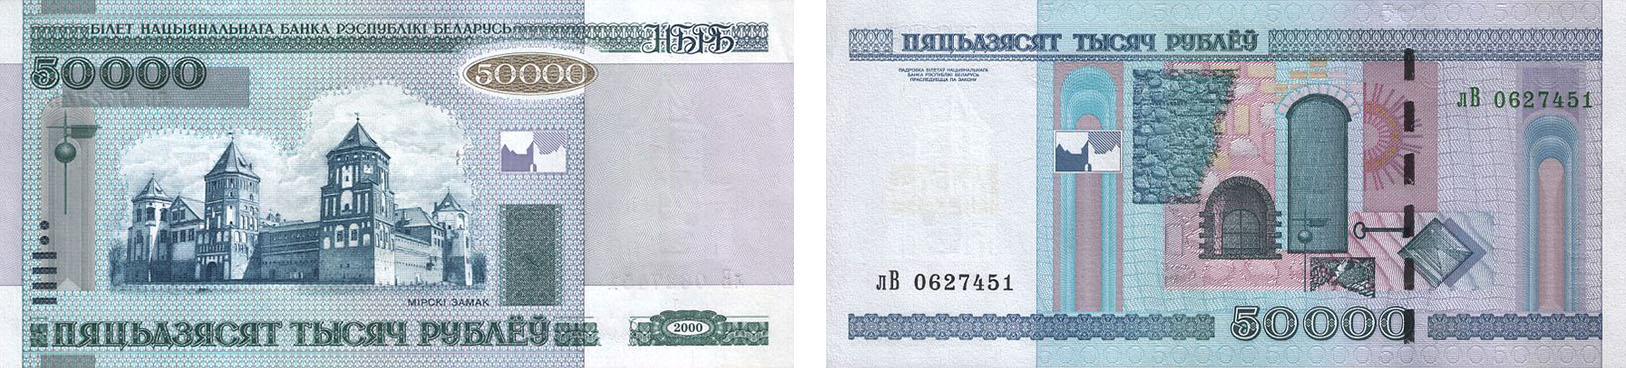 50000 рублей 2000 года с модификацией